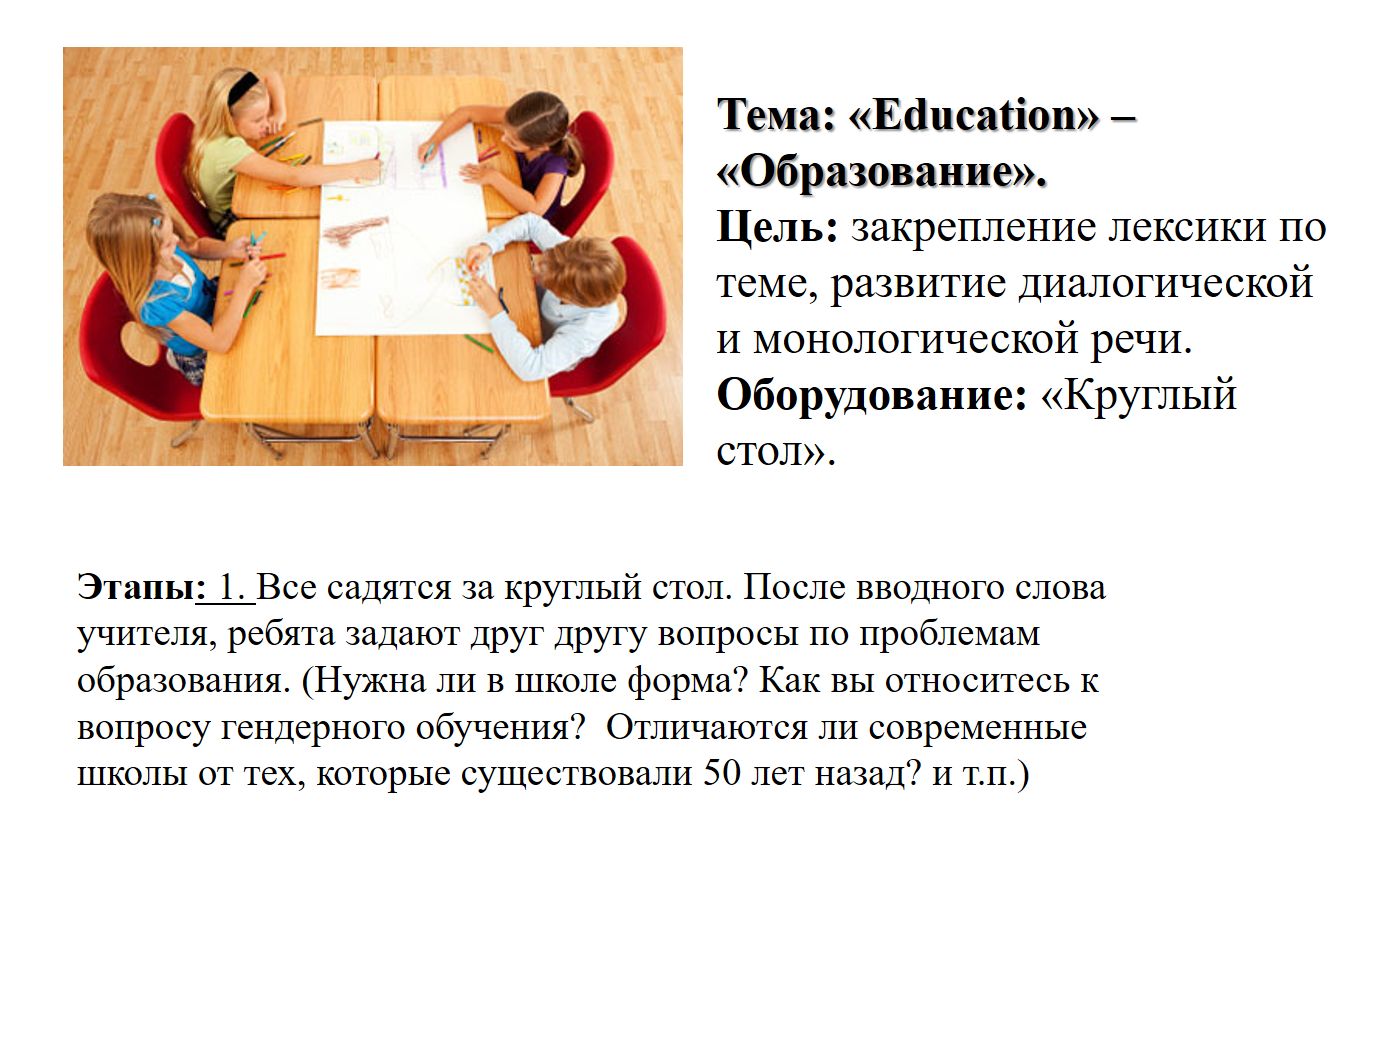 Топик: Использование информационных технологий в изучении английского языка в школе